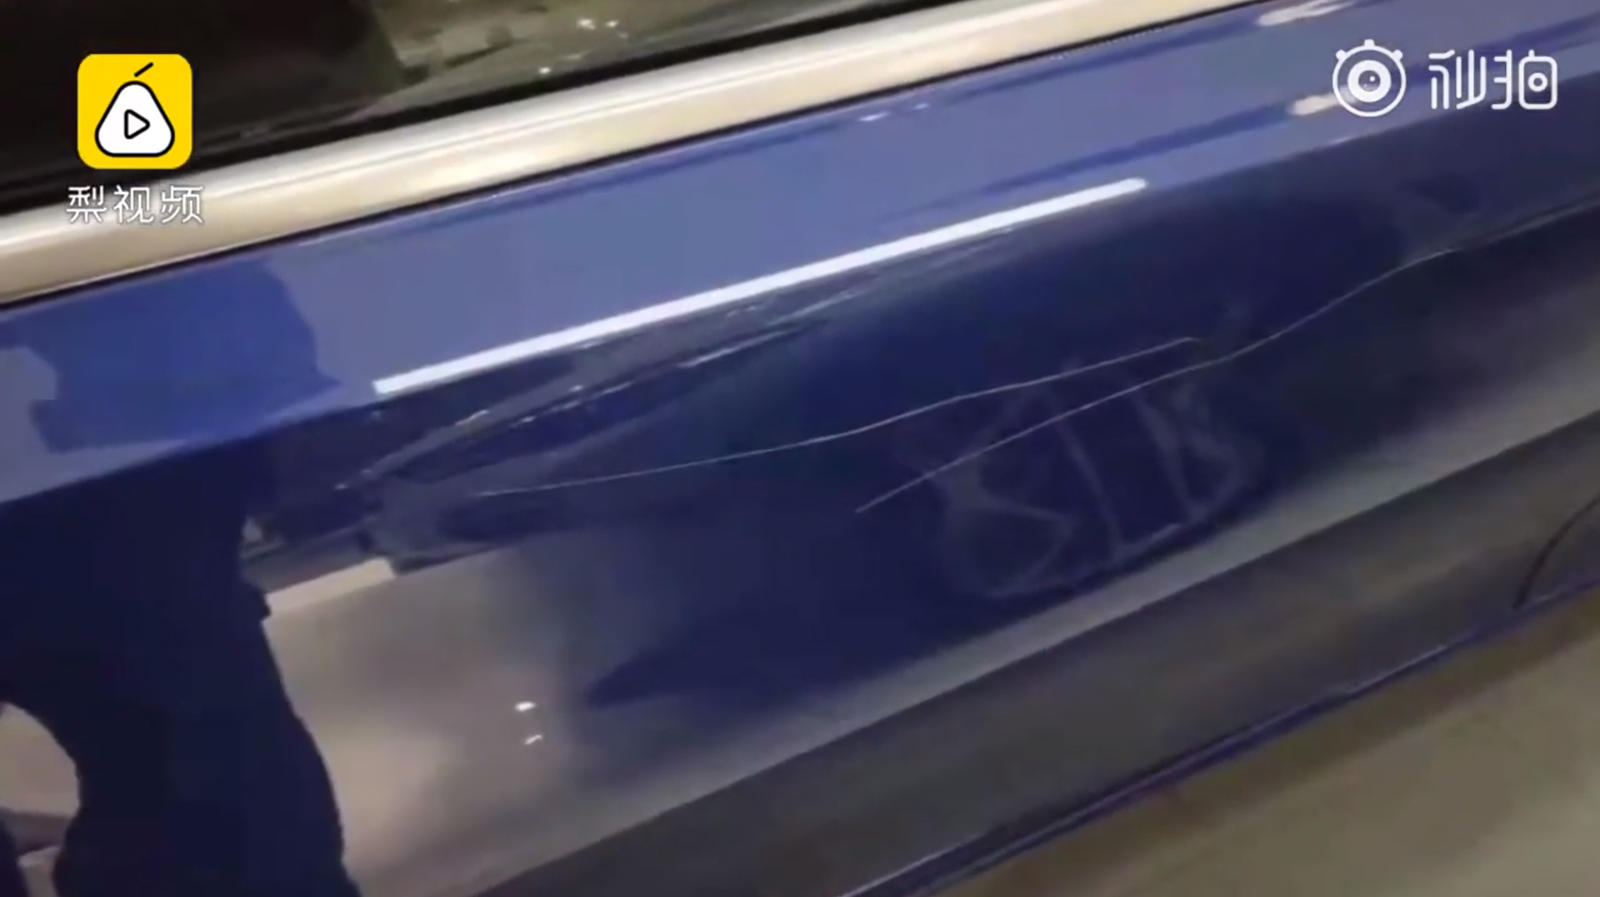 "بالفيديو والصور" مراهق يلحق الضرر بسيارة بي ام دبليو في الوكالة لإجبار والده على شرائها 16